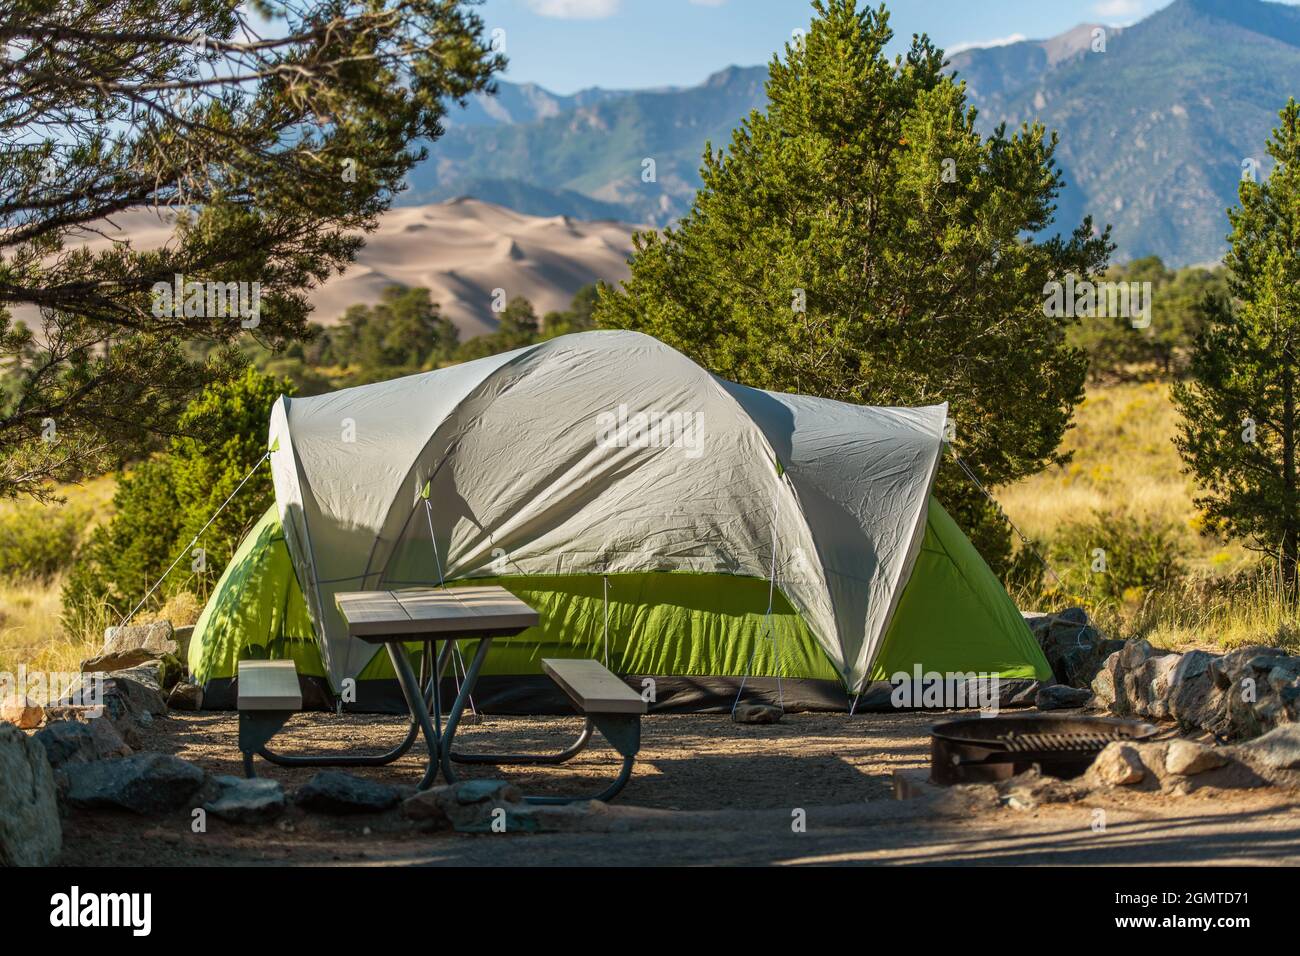 Stellplatz mit Blick auf den Campingplatz und großem grünen Zelt. Camping  im Great Sand Dunes National Park Colorado, Vereinigte Staaten von Amerika  Stockfotografie - Alamy